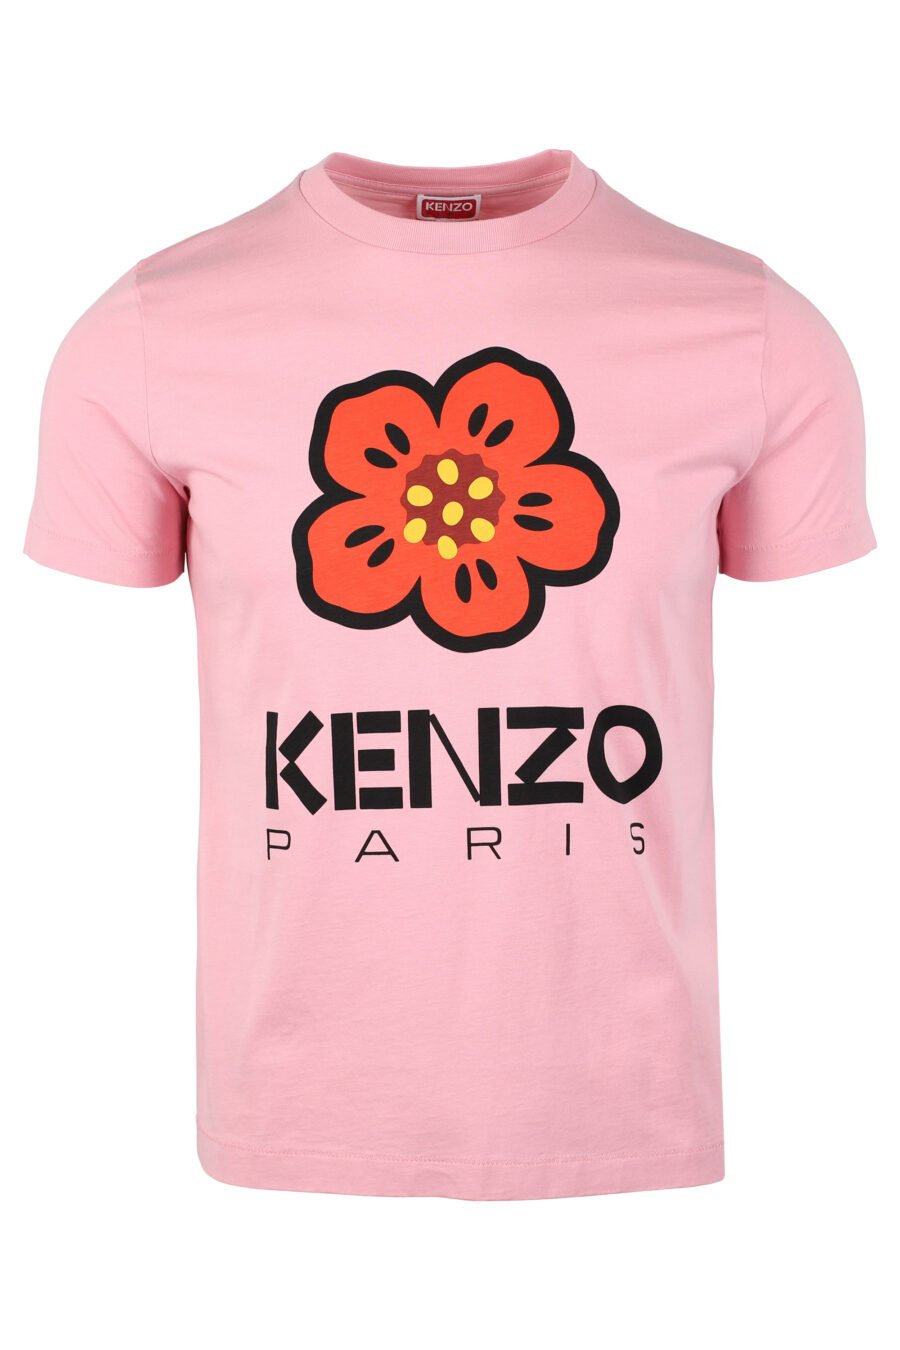 Rosa T-Shirt mit orangefarbenem Blumen-Maxilogo - IMG 4644